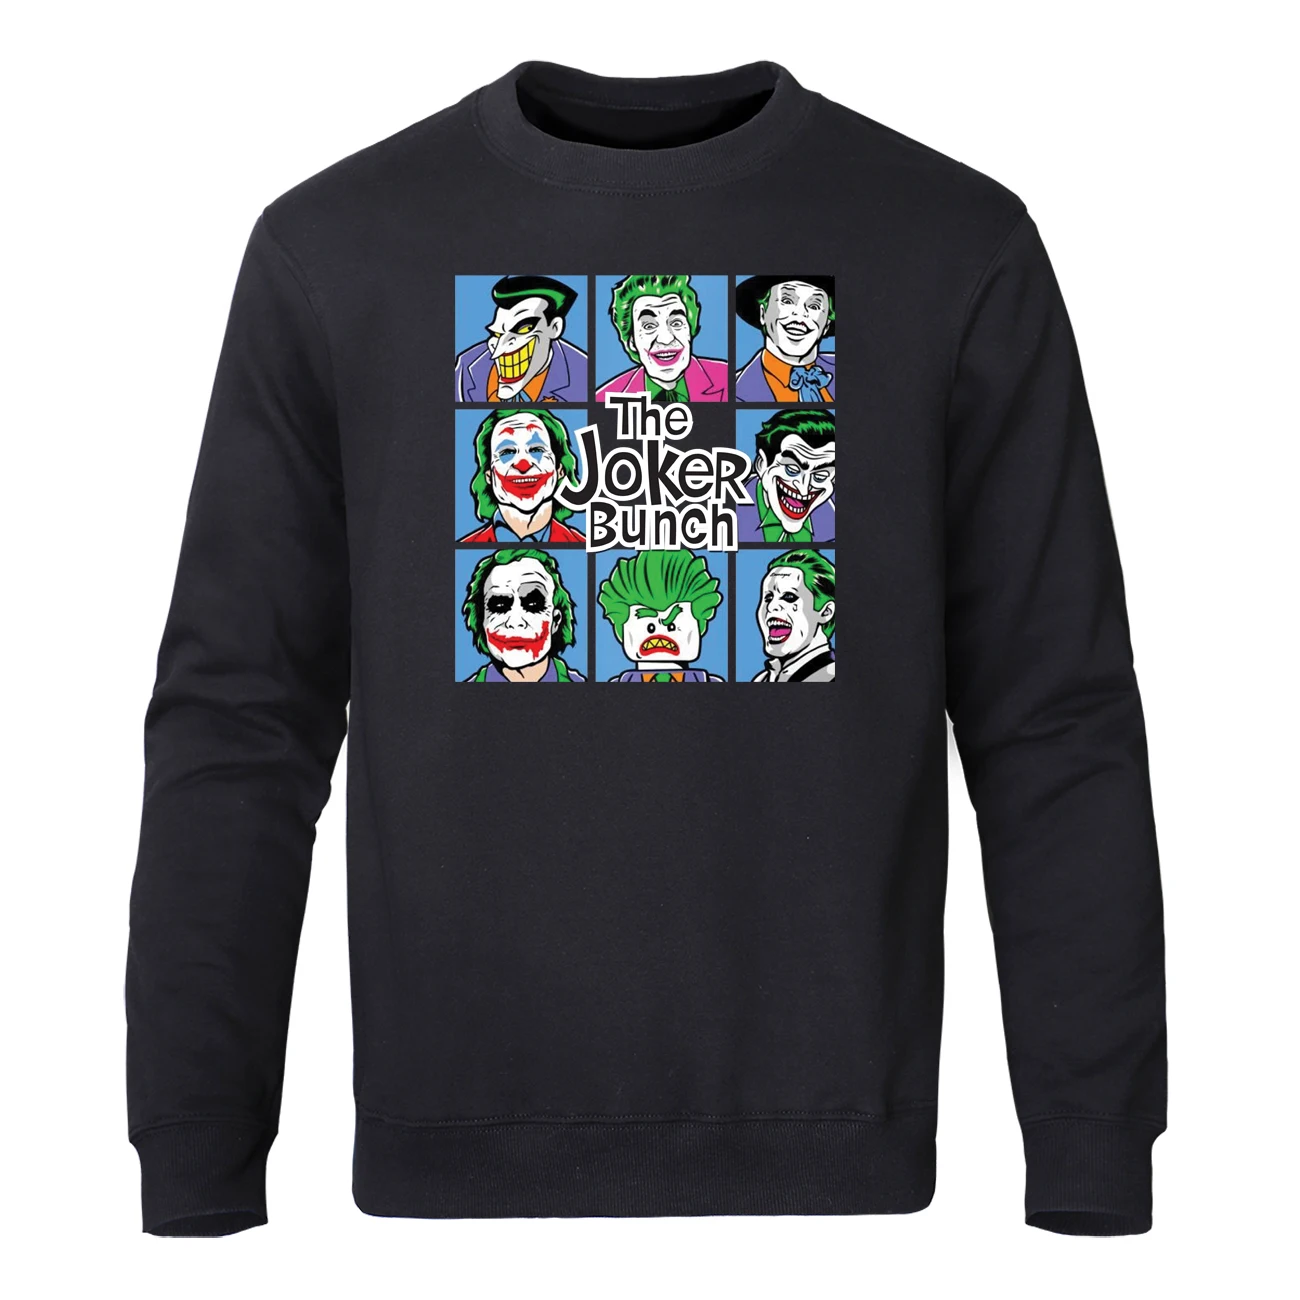 Забавная Толстовка с принтом Джокера, мужские топы в стиле хип-хоп, спортивная одежда, Осенний флисовый пуловер, Harajuku, уличная одежда - Цвет: Black